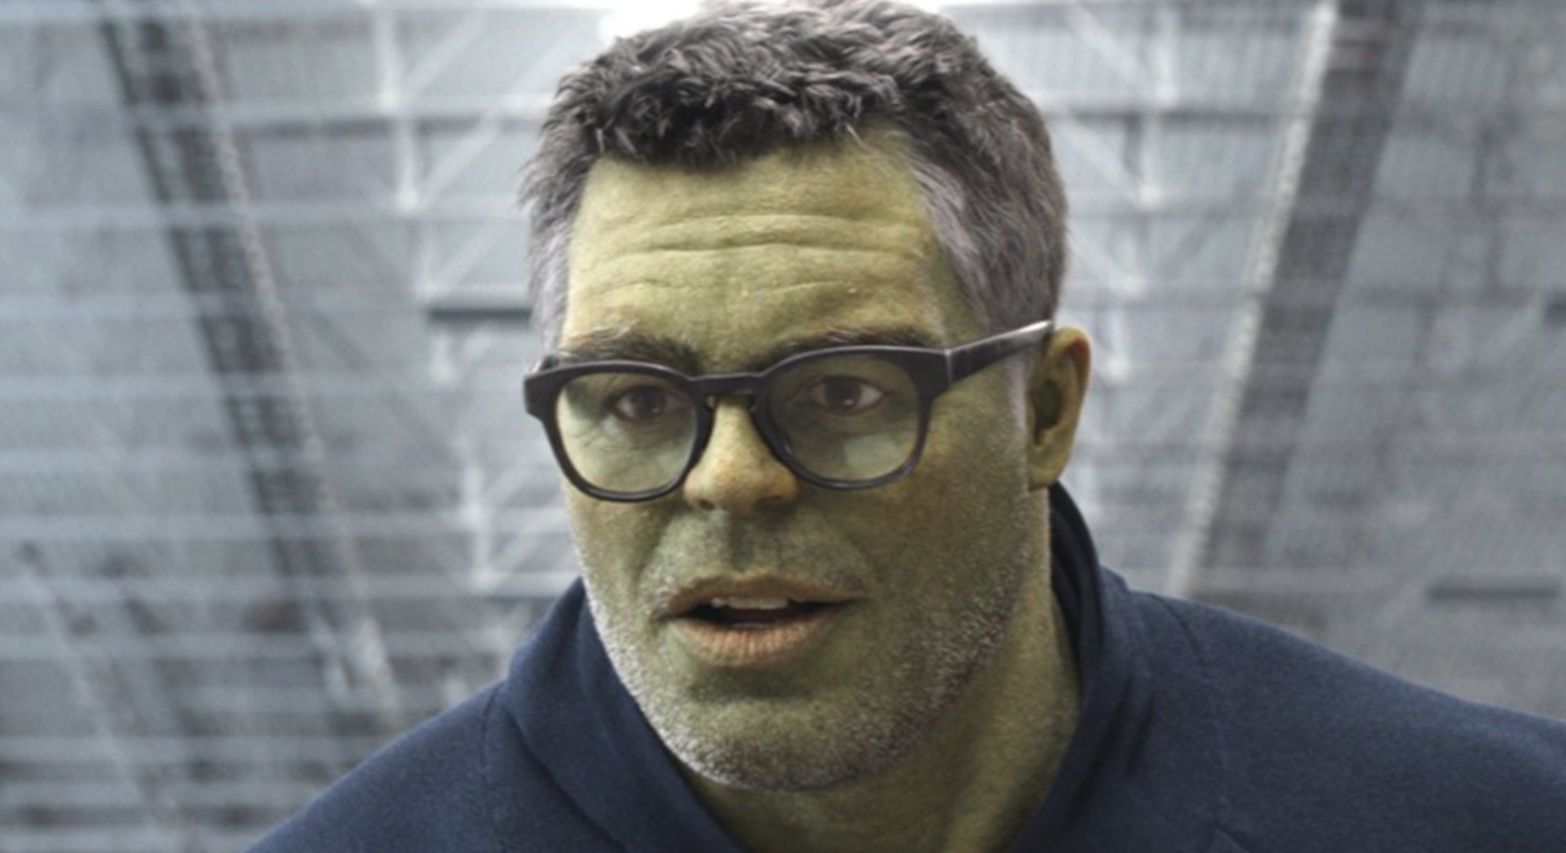 Professor Hulk in Avengers: Endgame